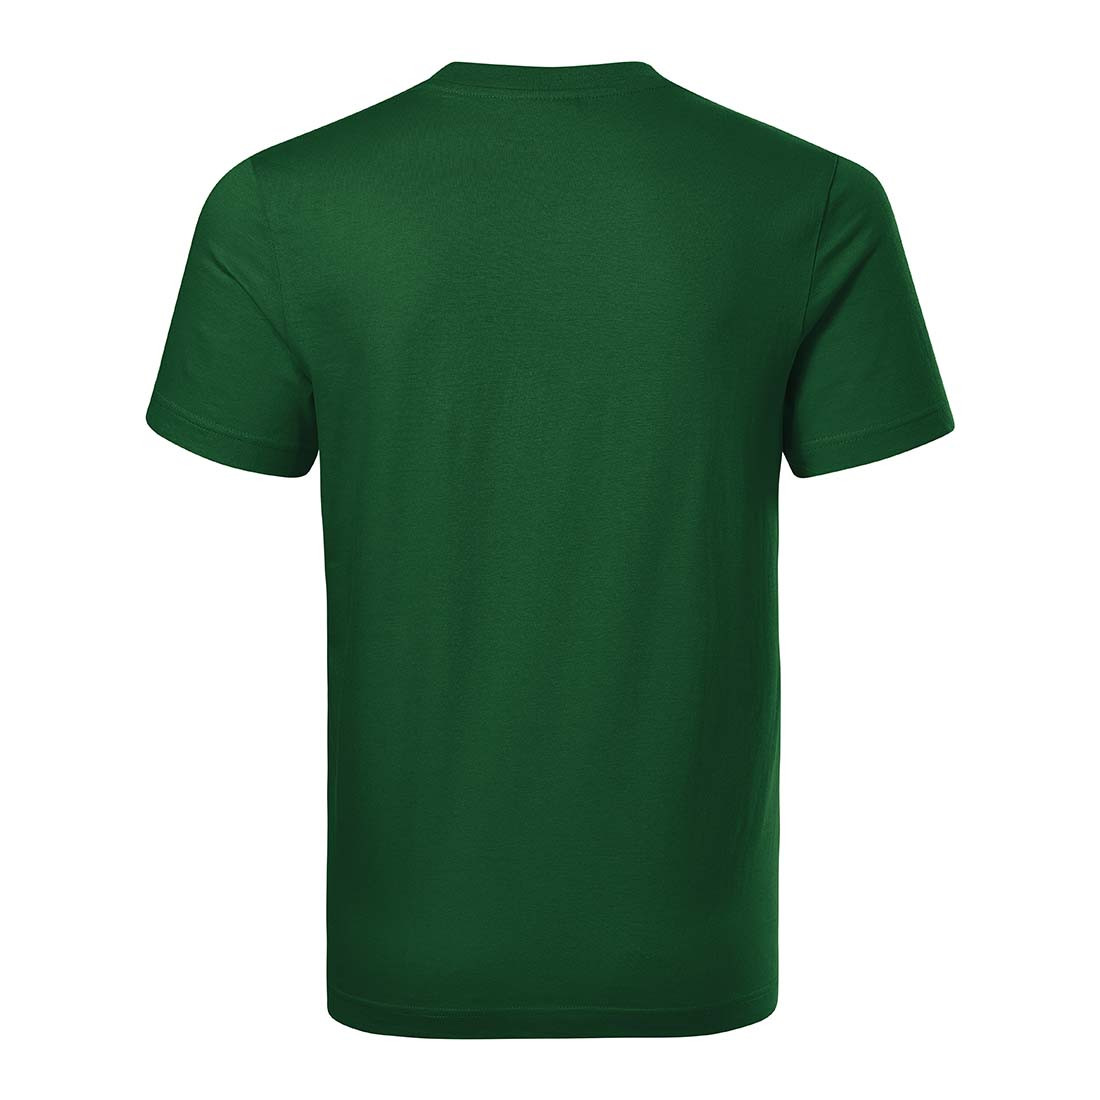 RECALL Unisex T-shirt - Safetywear